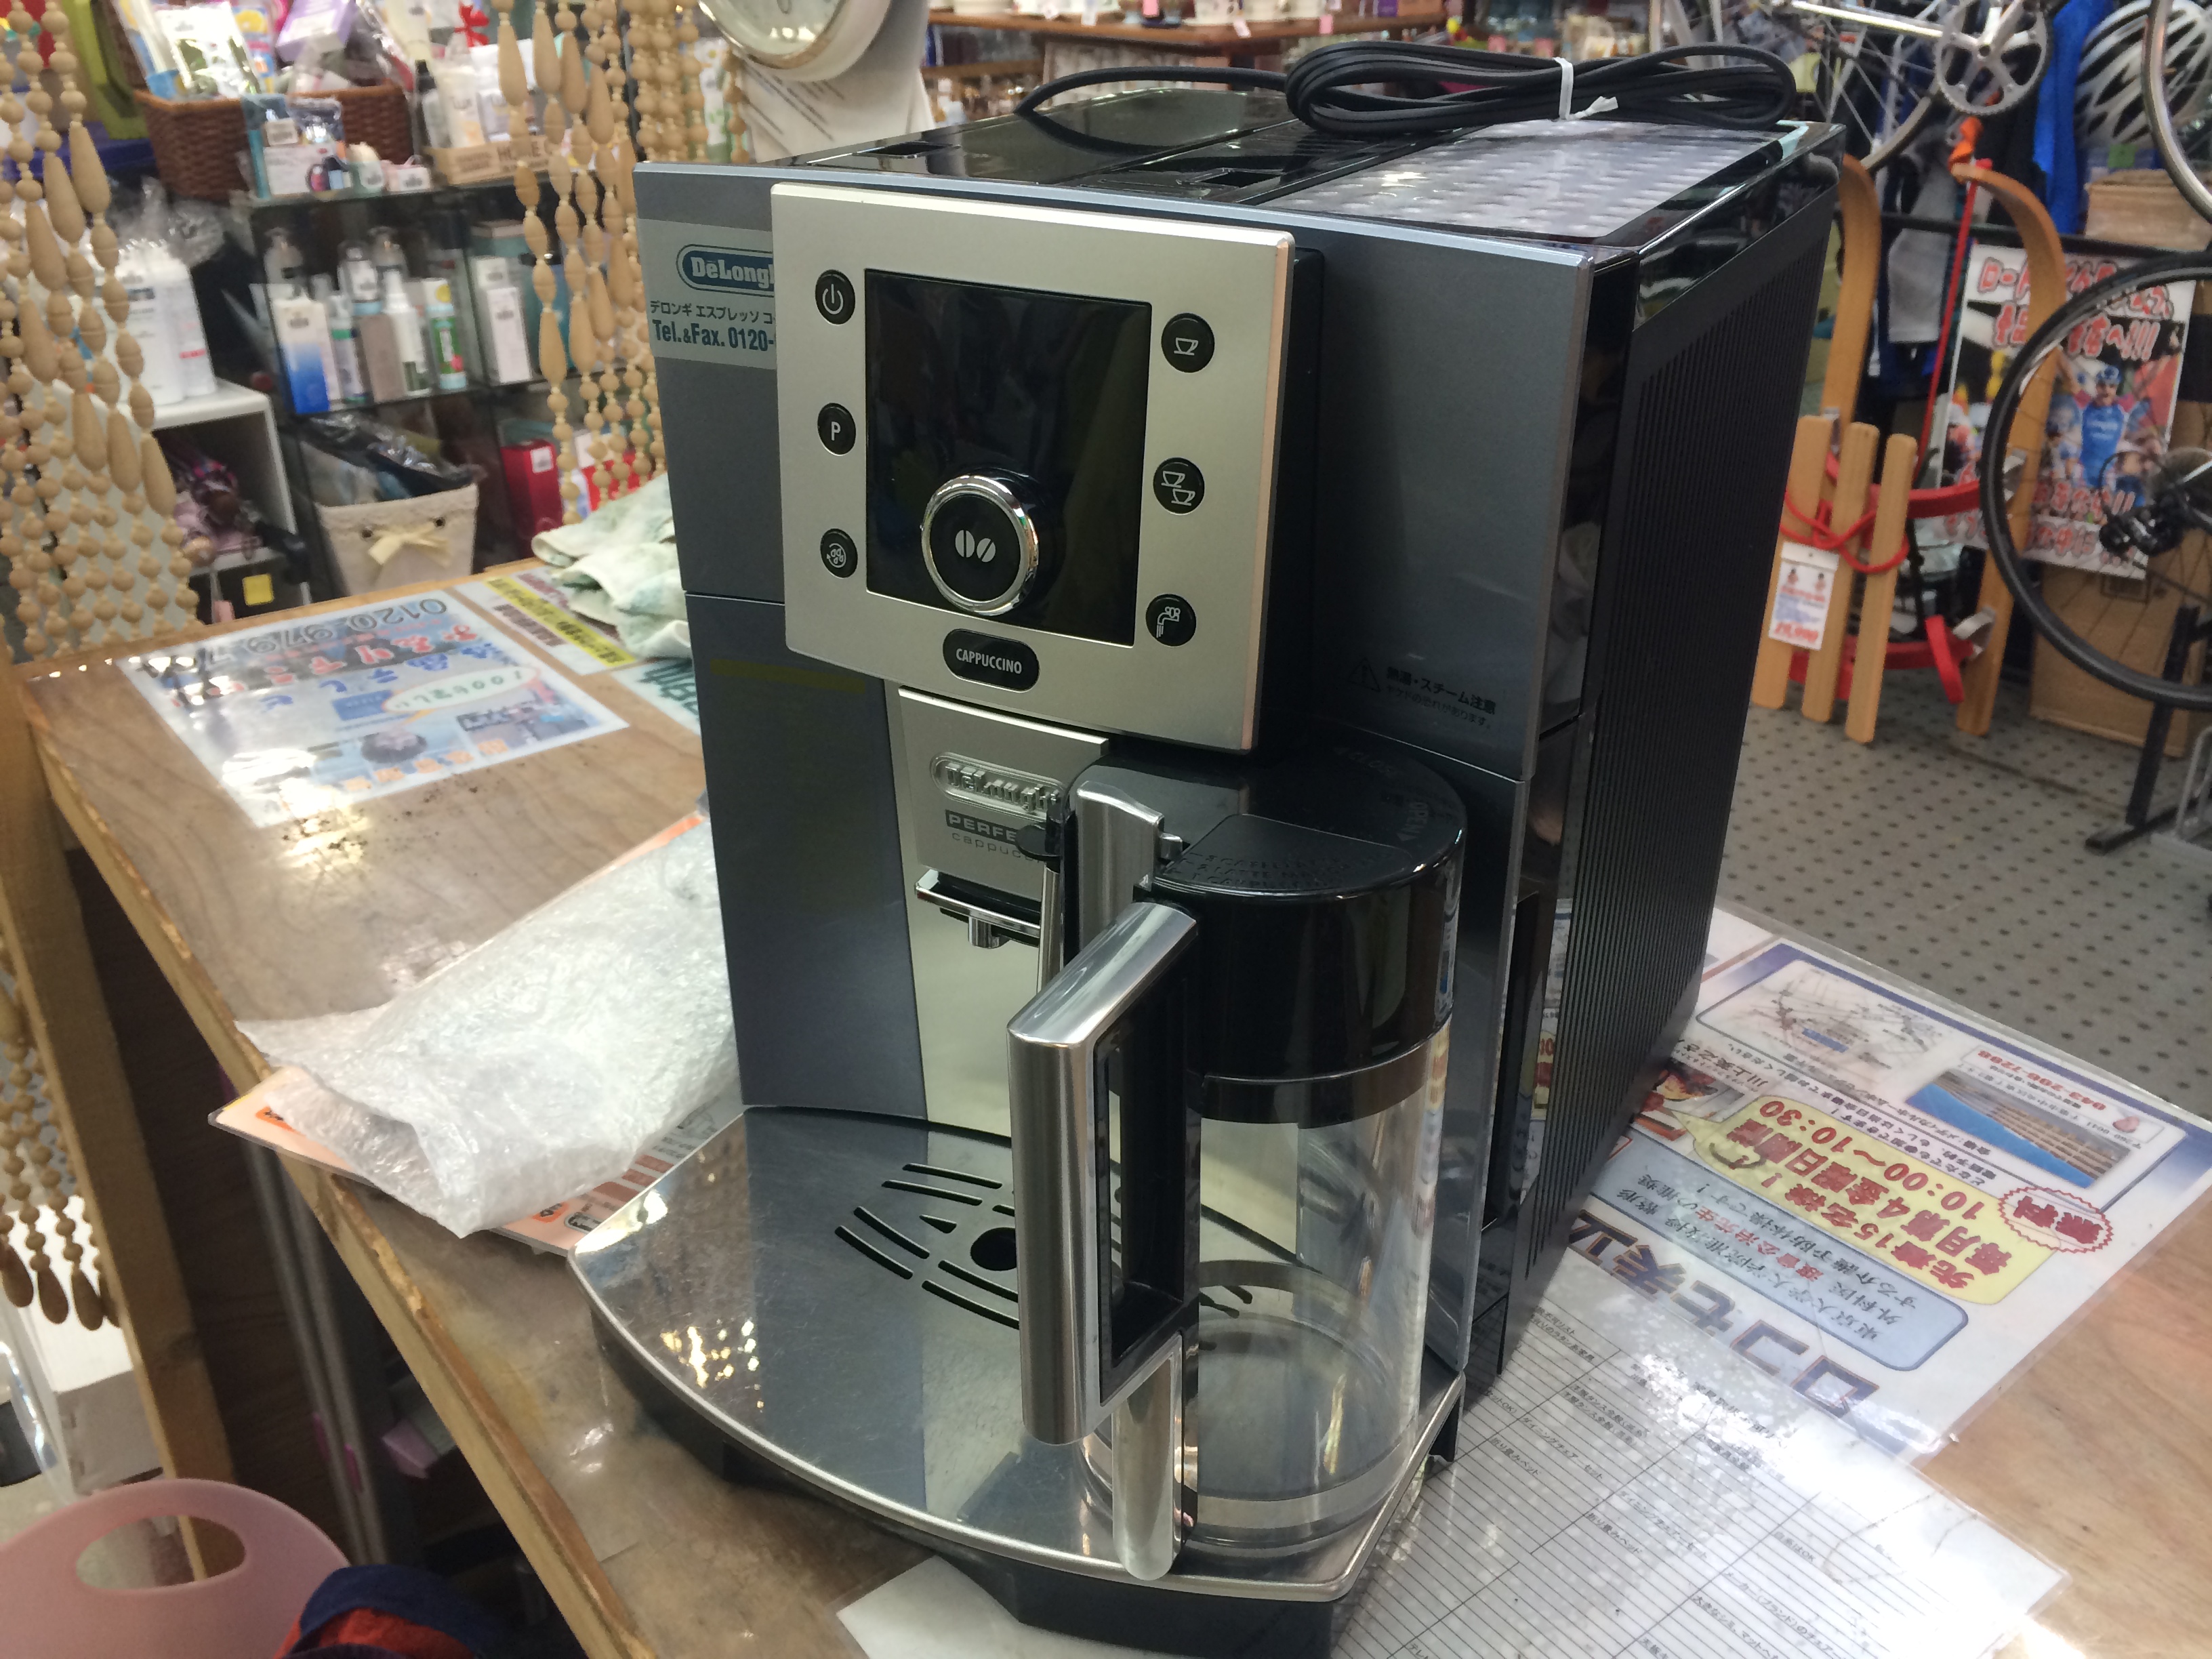 産地直送品 デロンギ コーヒーメーカー esam5500mh エスプレッソ 全自動 業務 用 コーヒーメーカー